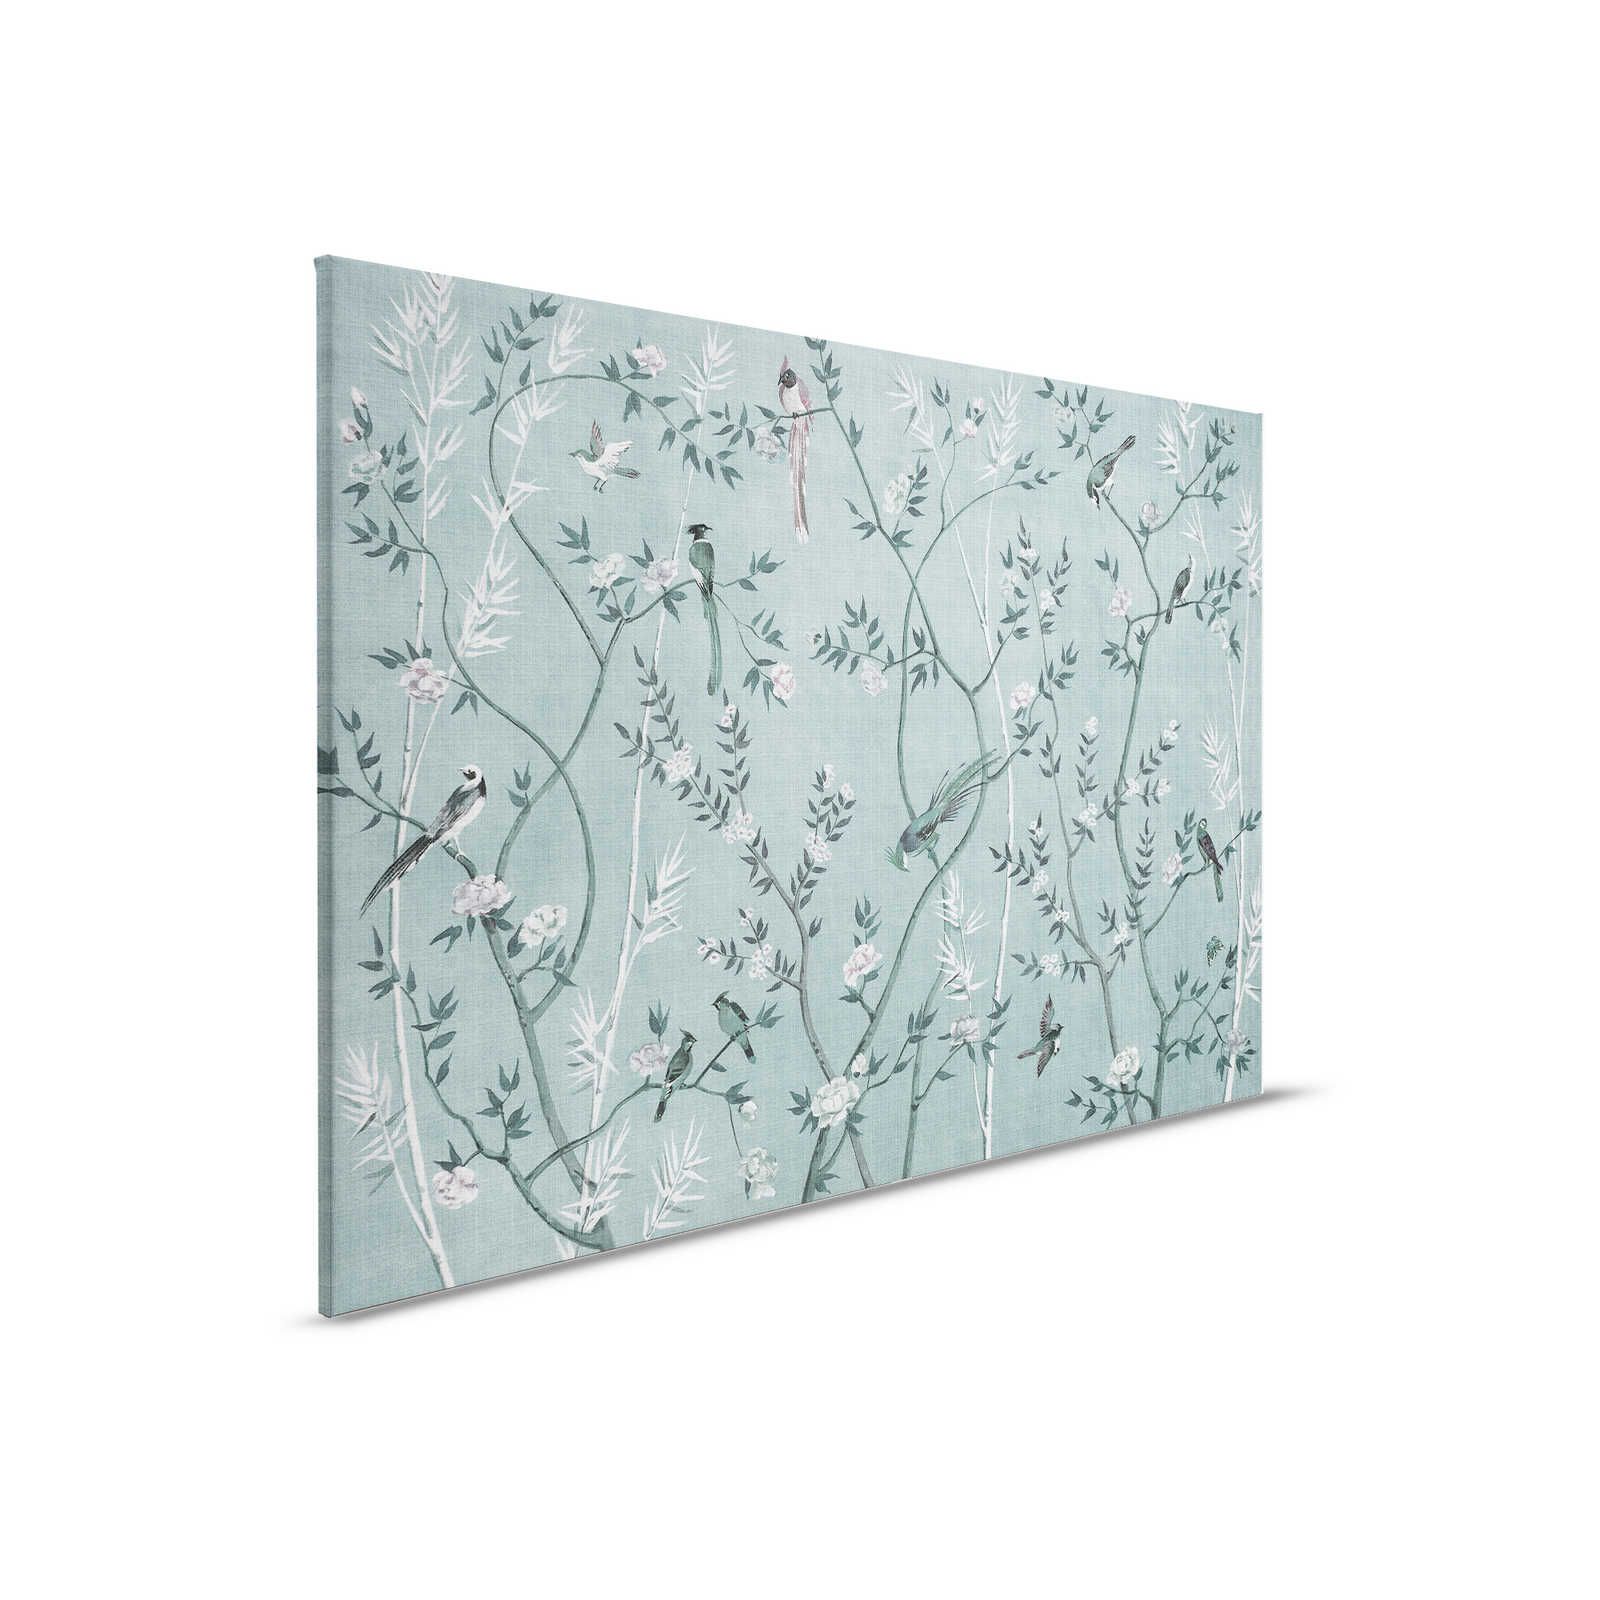 Tea Room 1 - Leinwandbild Vögel & Blüten Design in Petrol & Weiß – 0,90 m x 0,60 m
